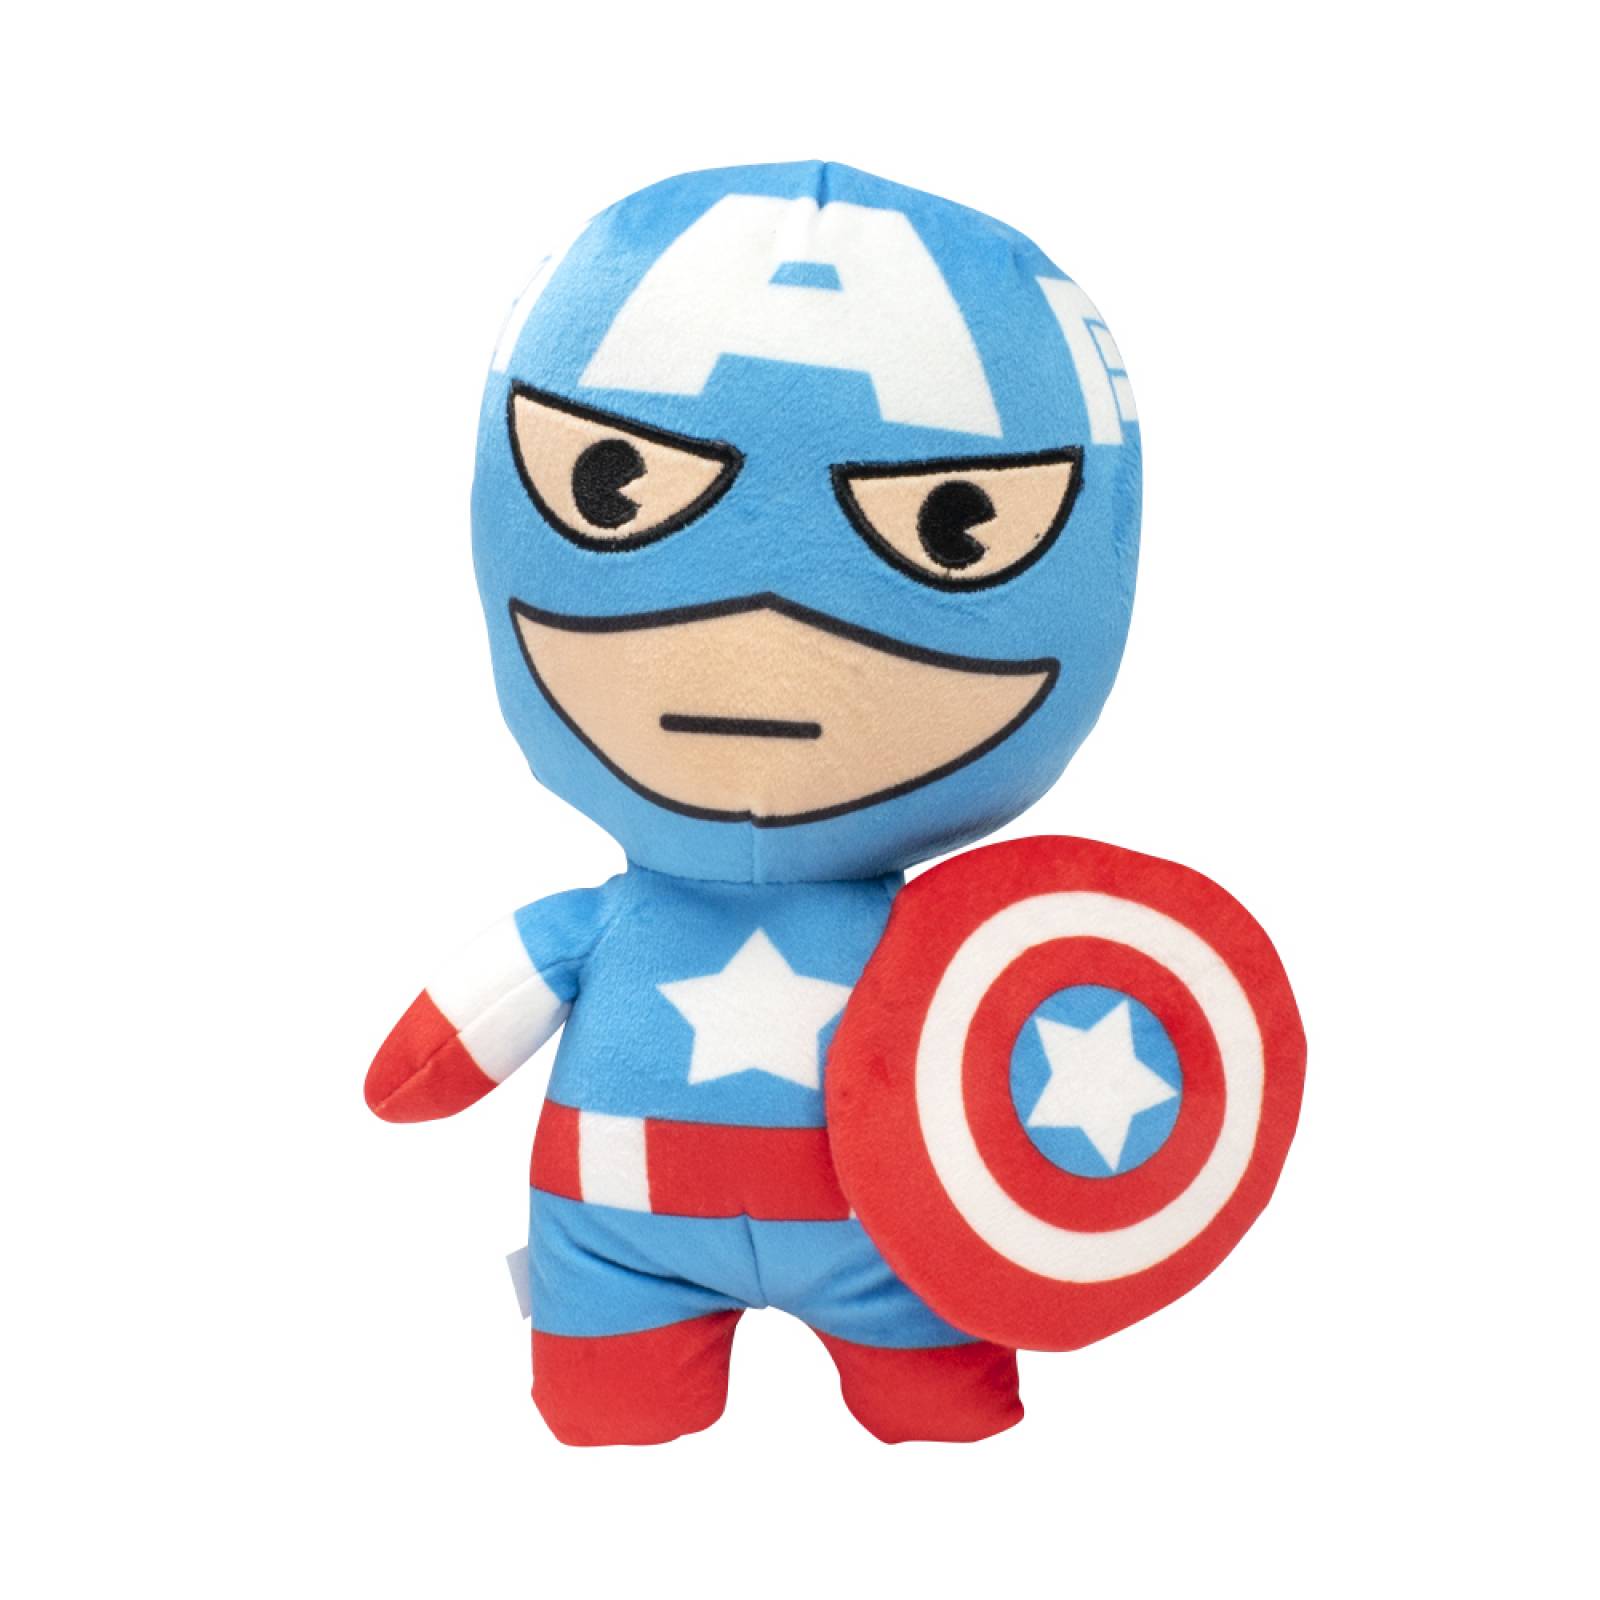 Peluche de Capitán América  Multicolor  Mediano